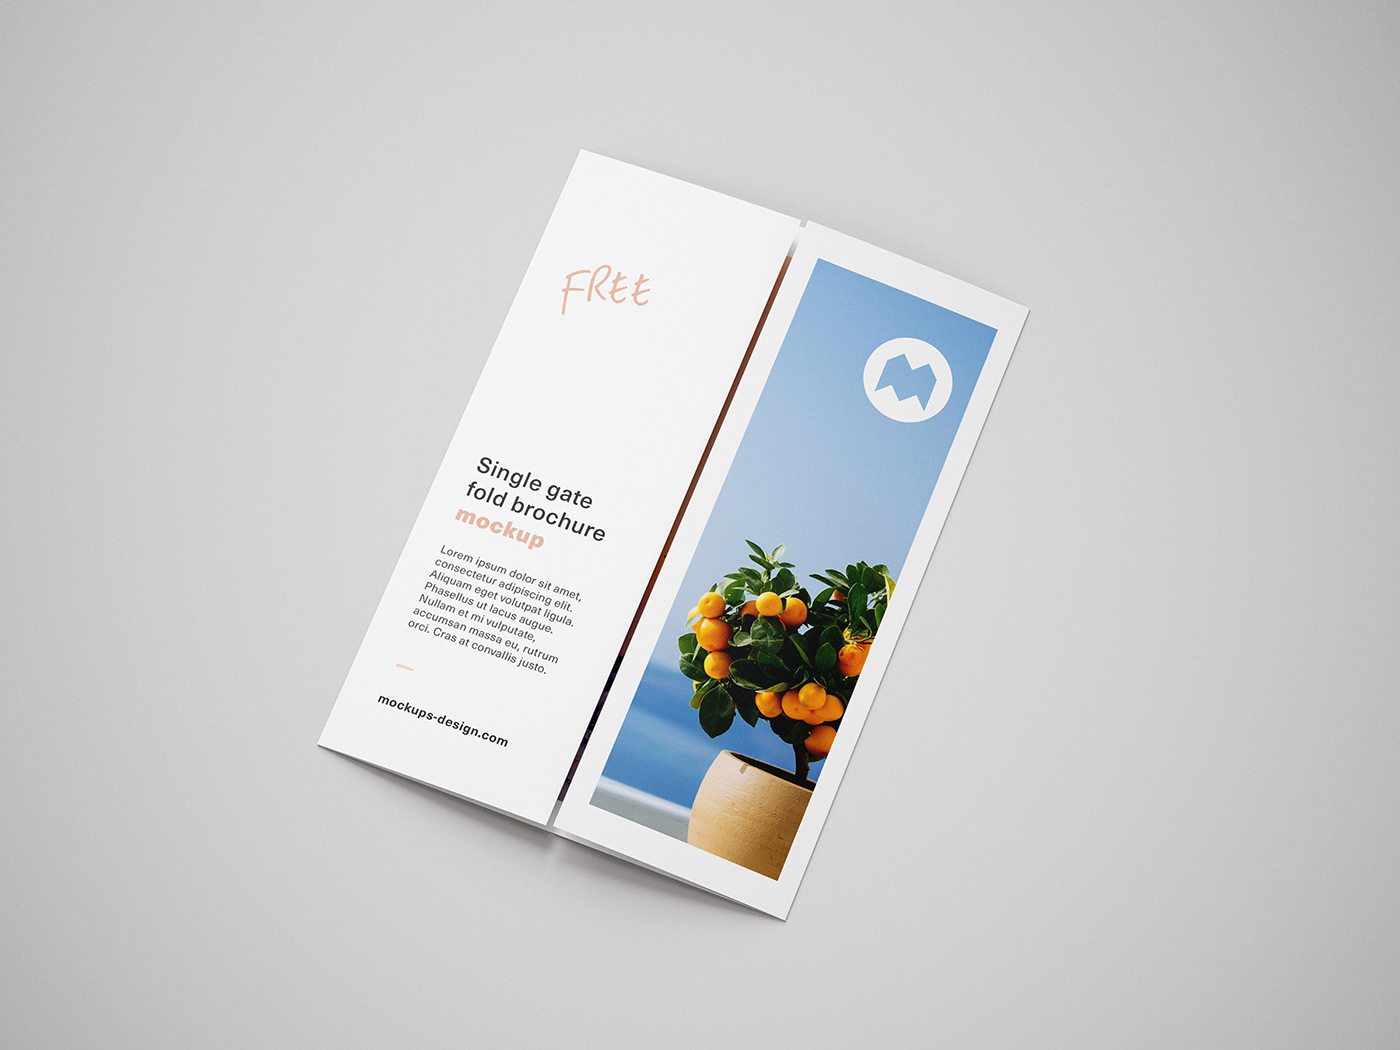 Single gate fold brochure leaflet flyer Mockup free psd download